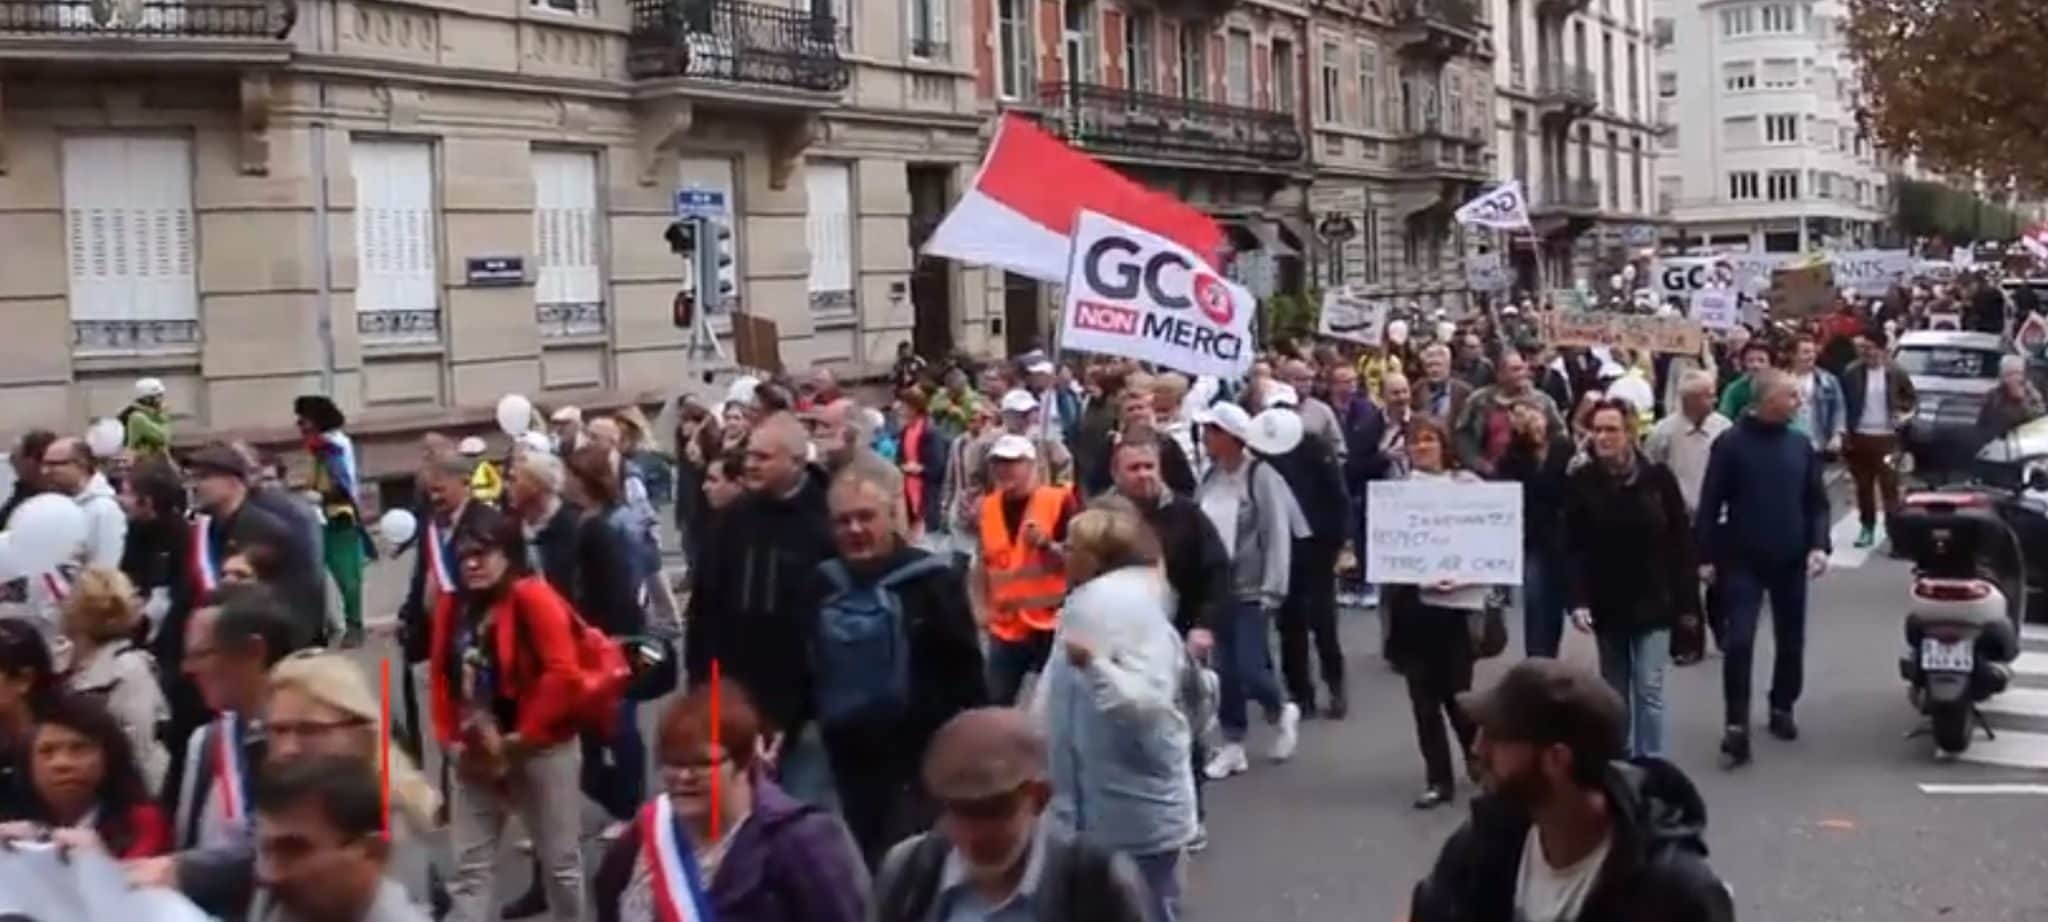 Manifestation contre le GCO en septembre 2017 (capture d'écran)